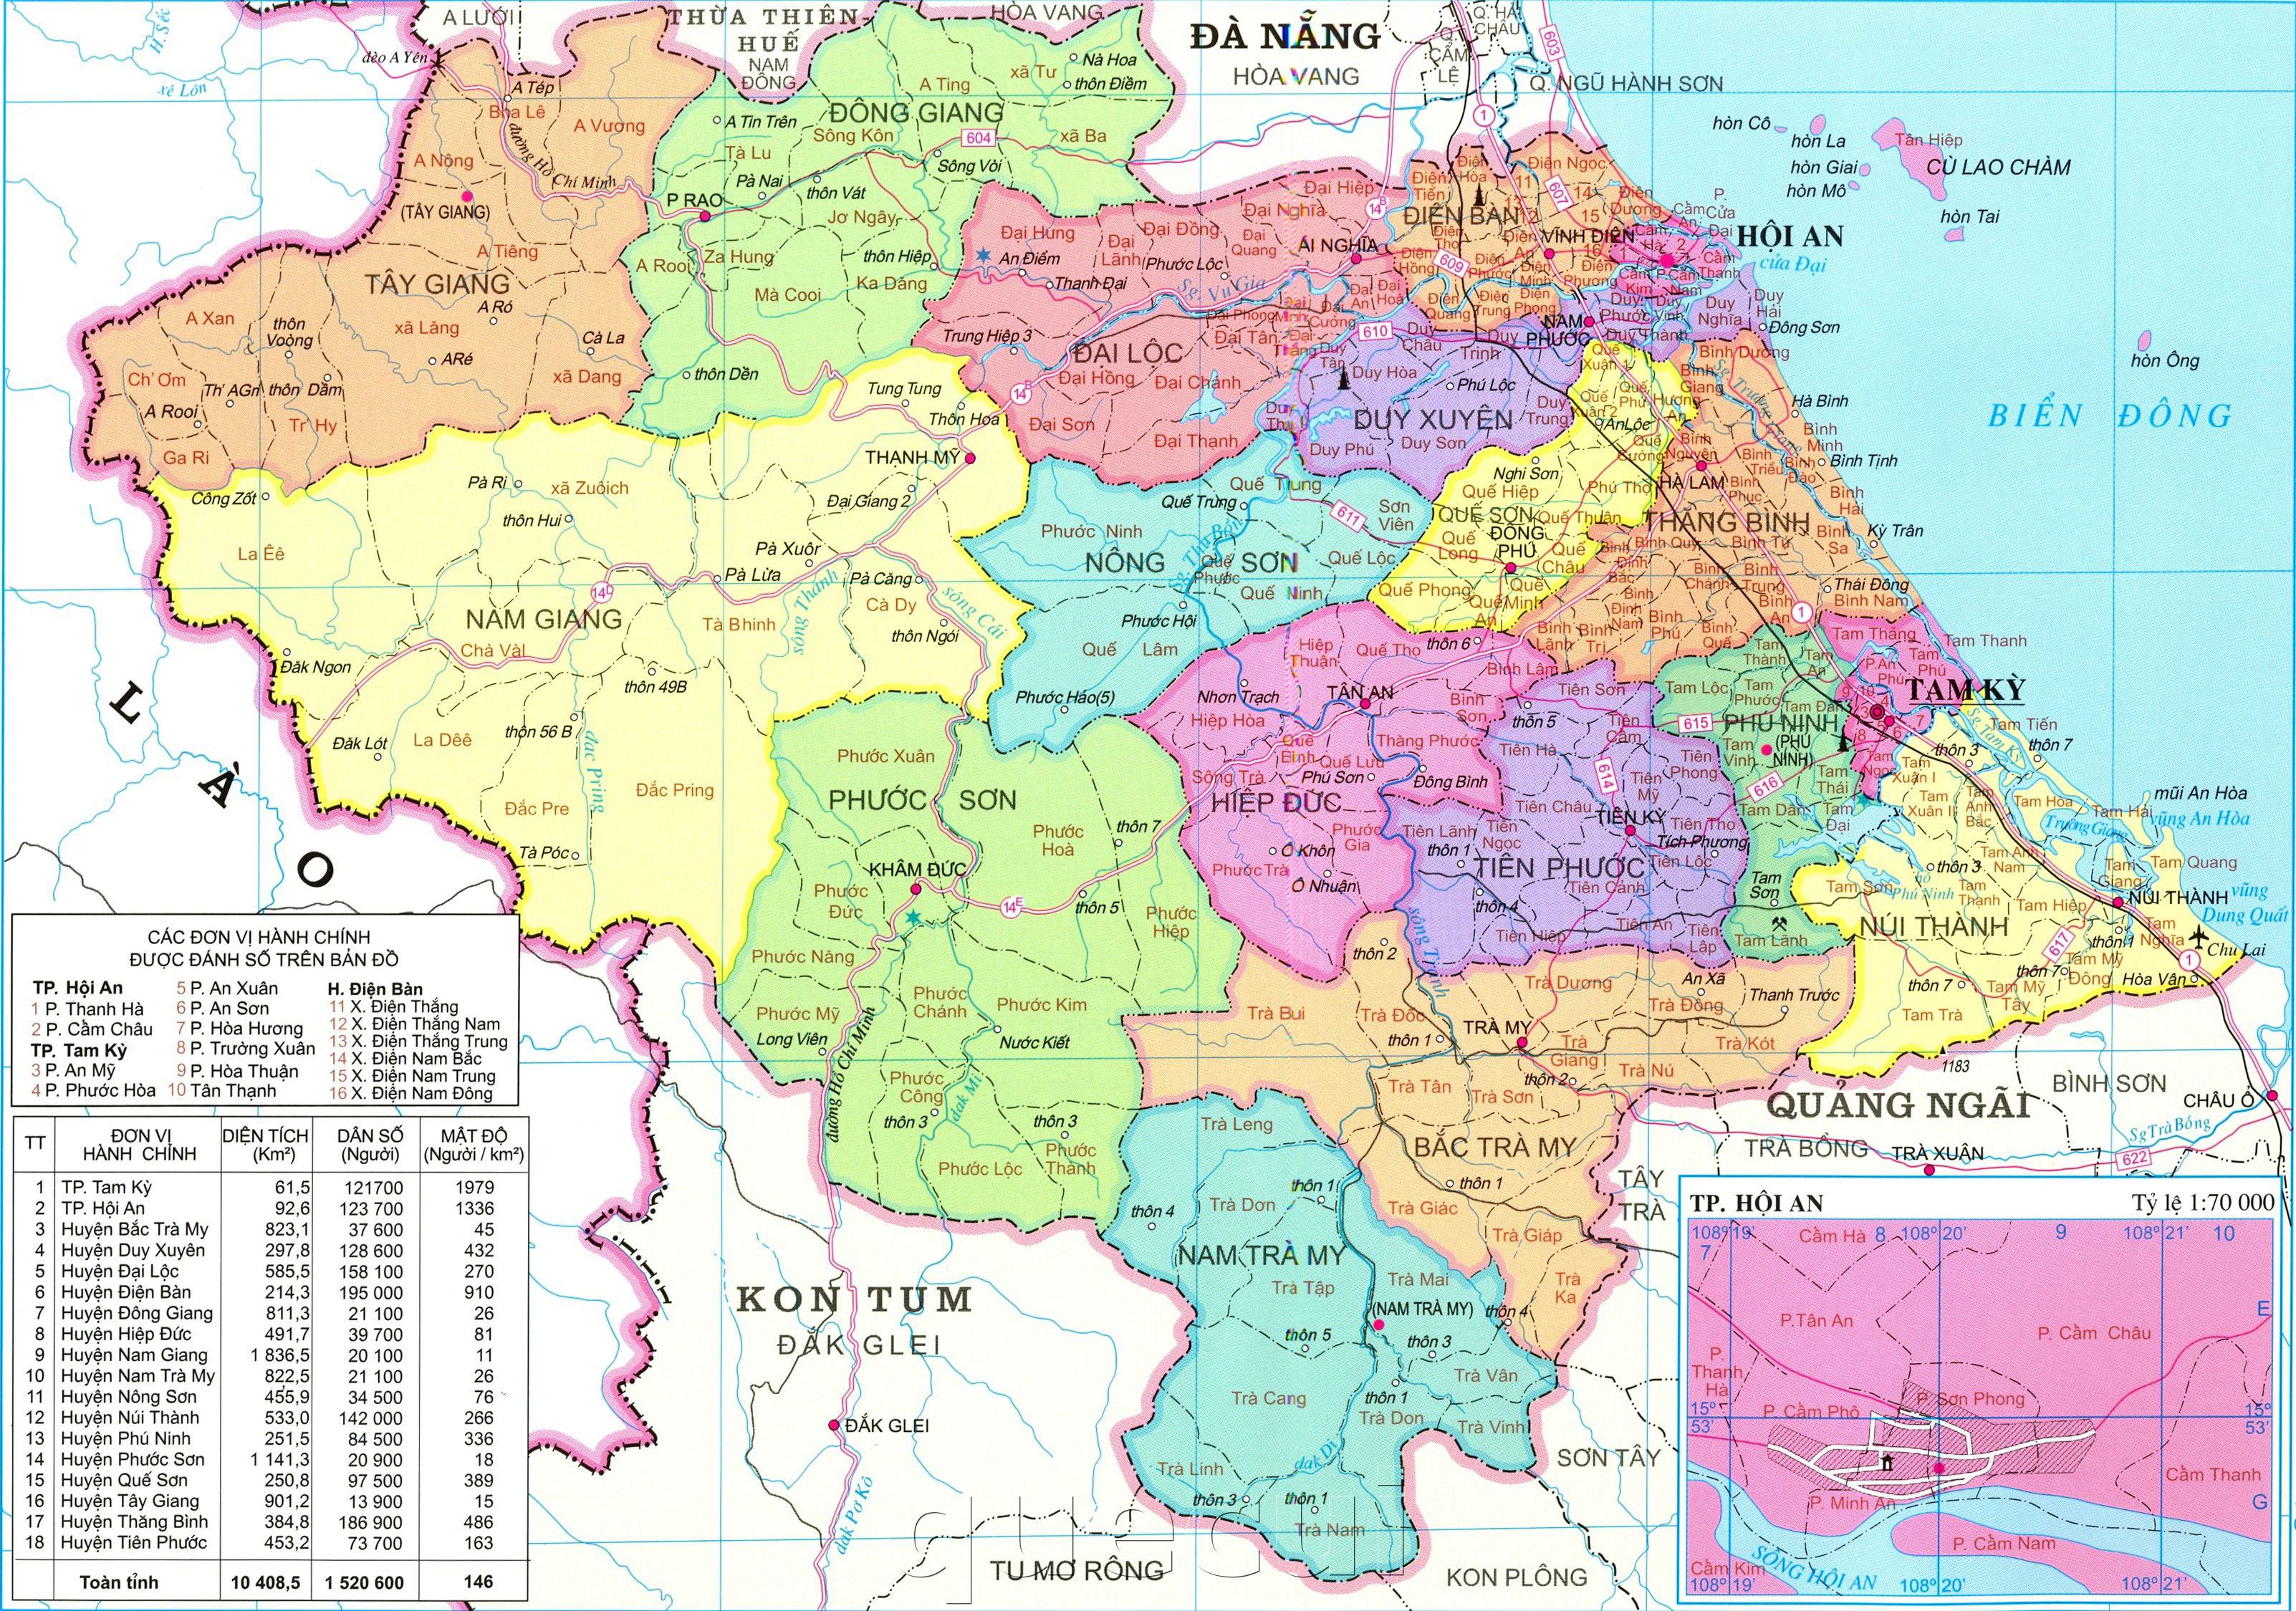 Bản đồ Quảng Nam đã được cập nhật chính xác nhất, đem lại thông tin quan trọng cho người dân. Hãy đón xem hình ảnh liên quan để khám phá tất cả các địa điểm và thông tin hữu ích từ bản đồ này.